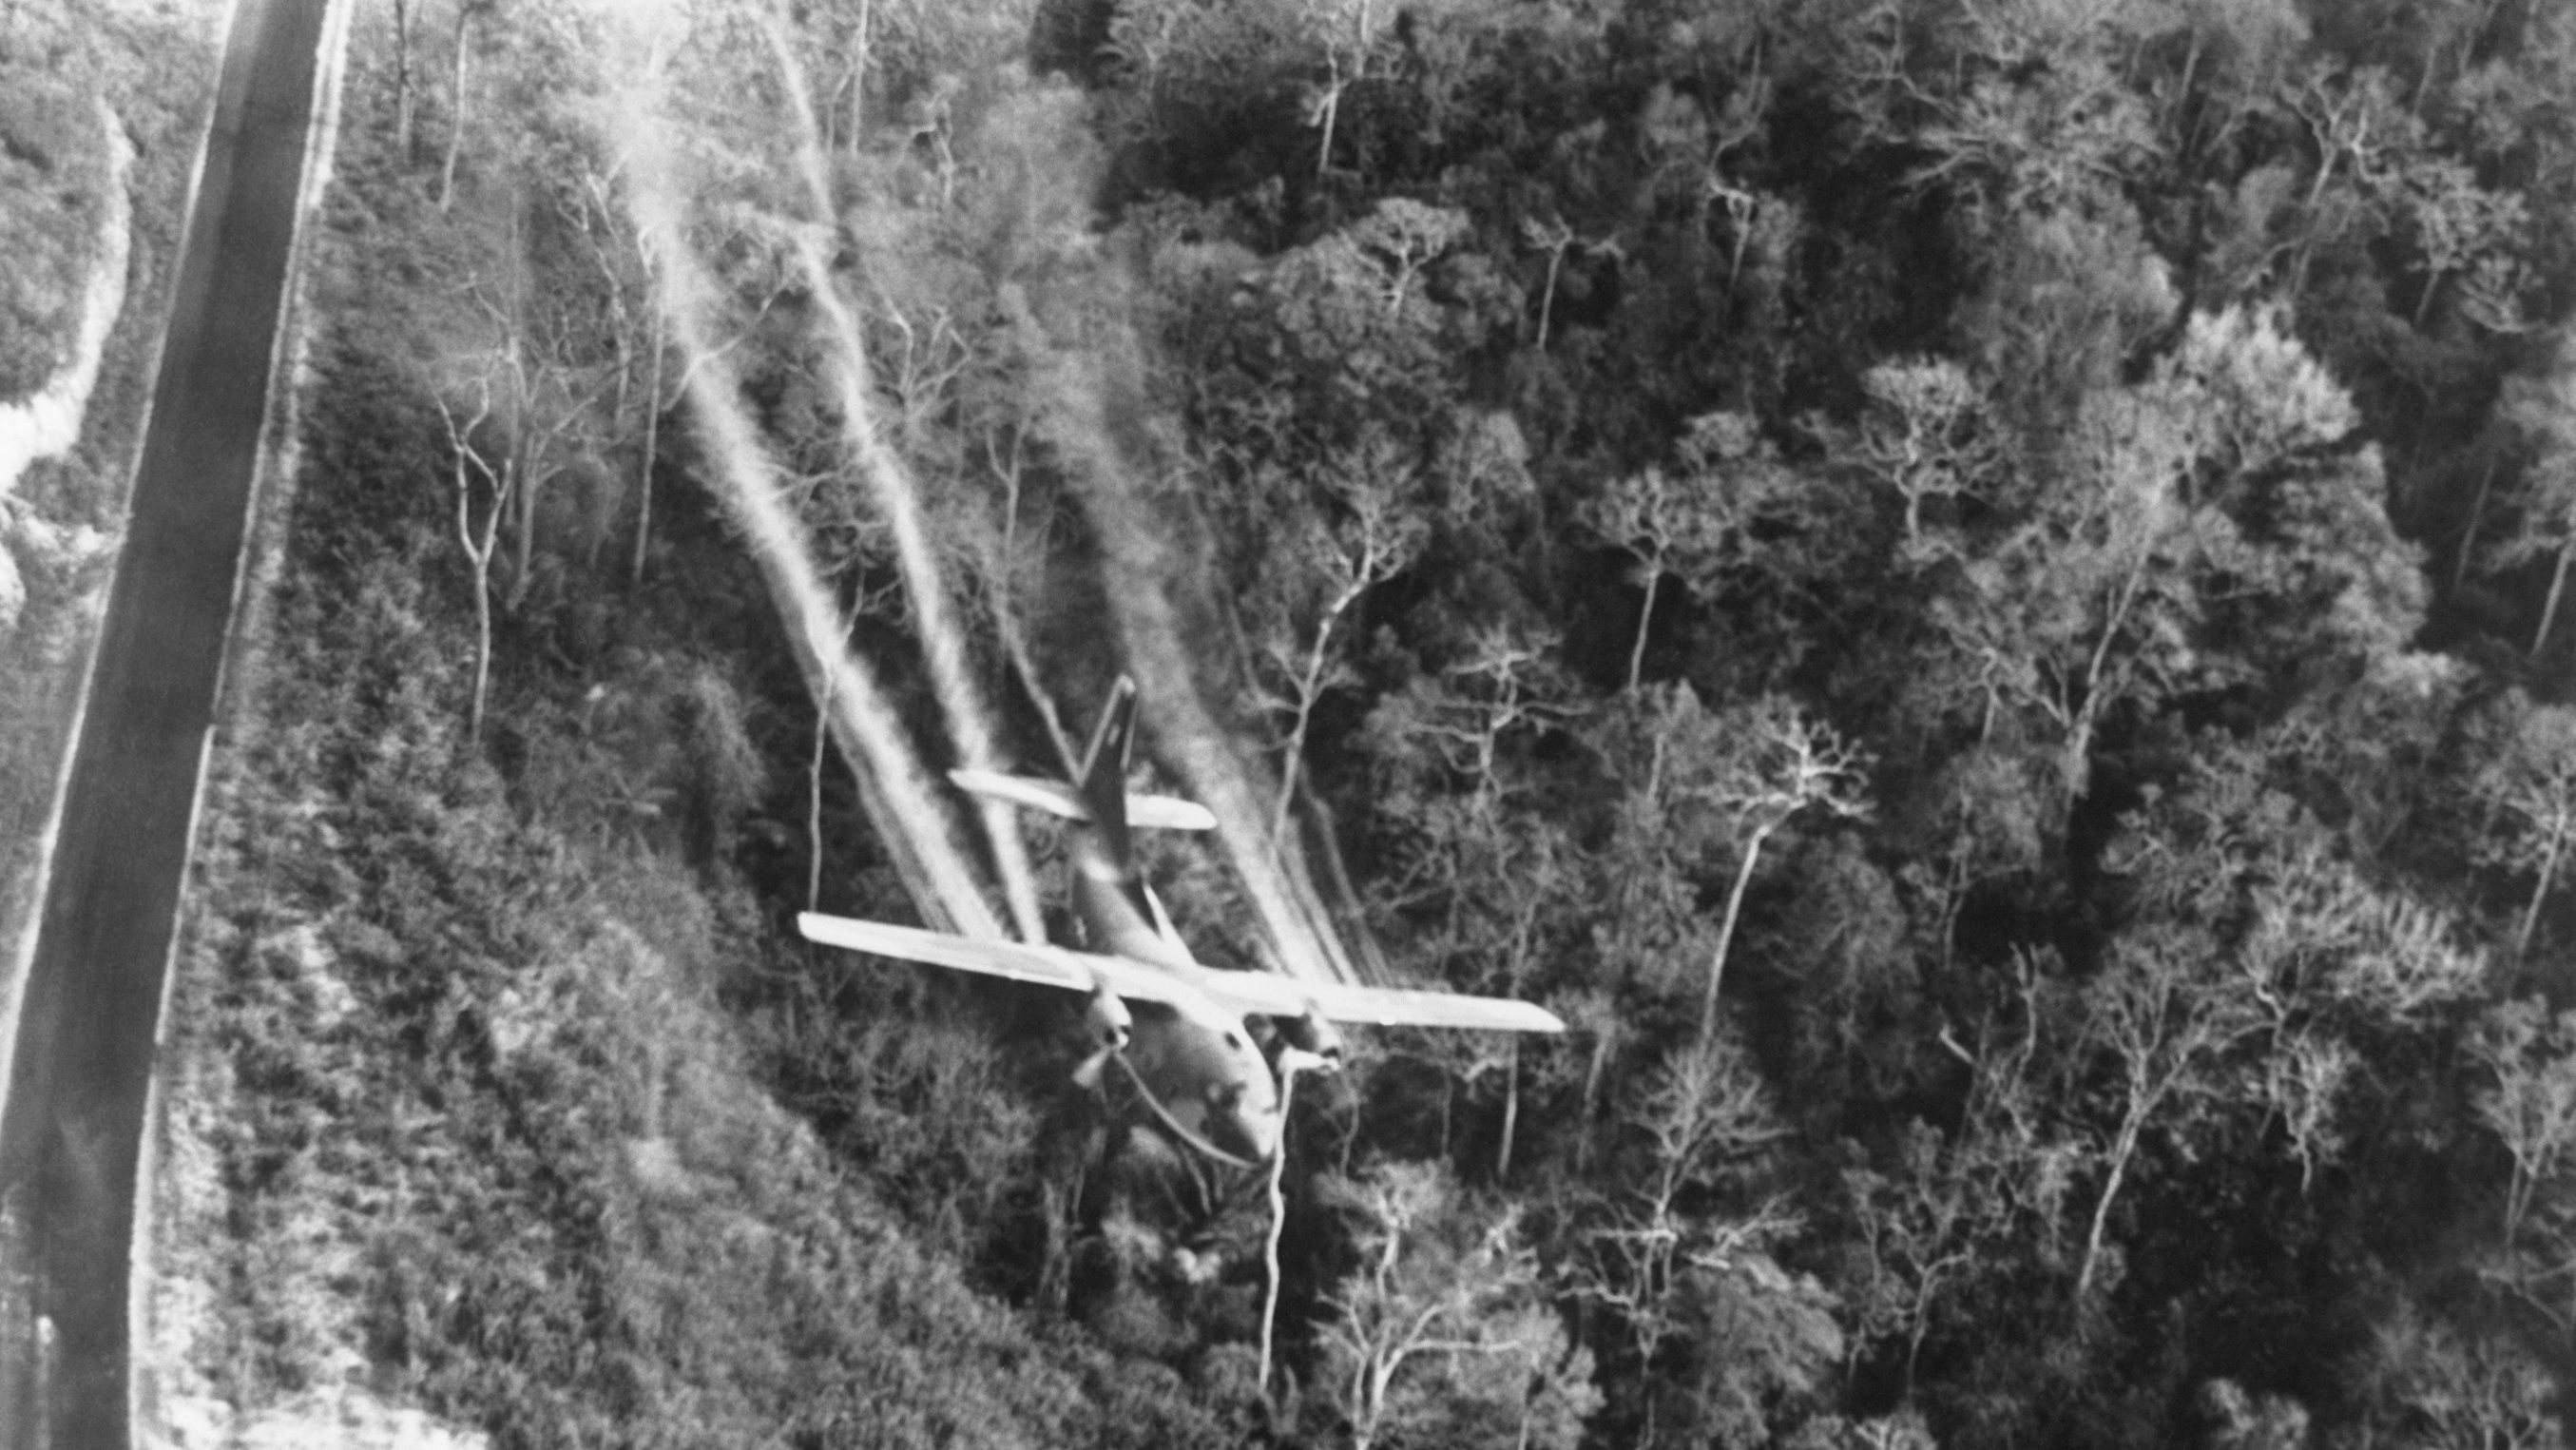 Spraying Agent Orange over Vietnam